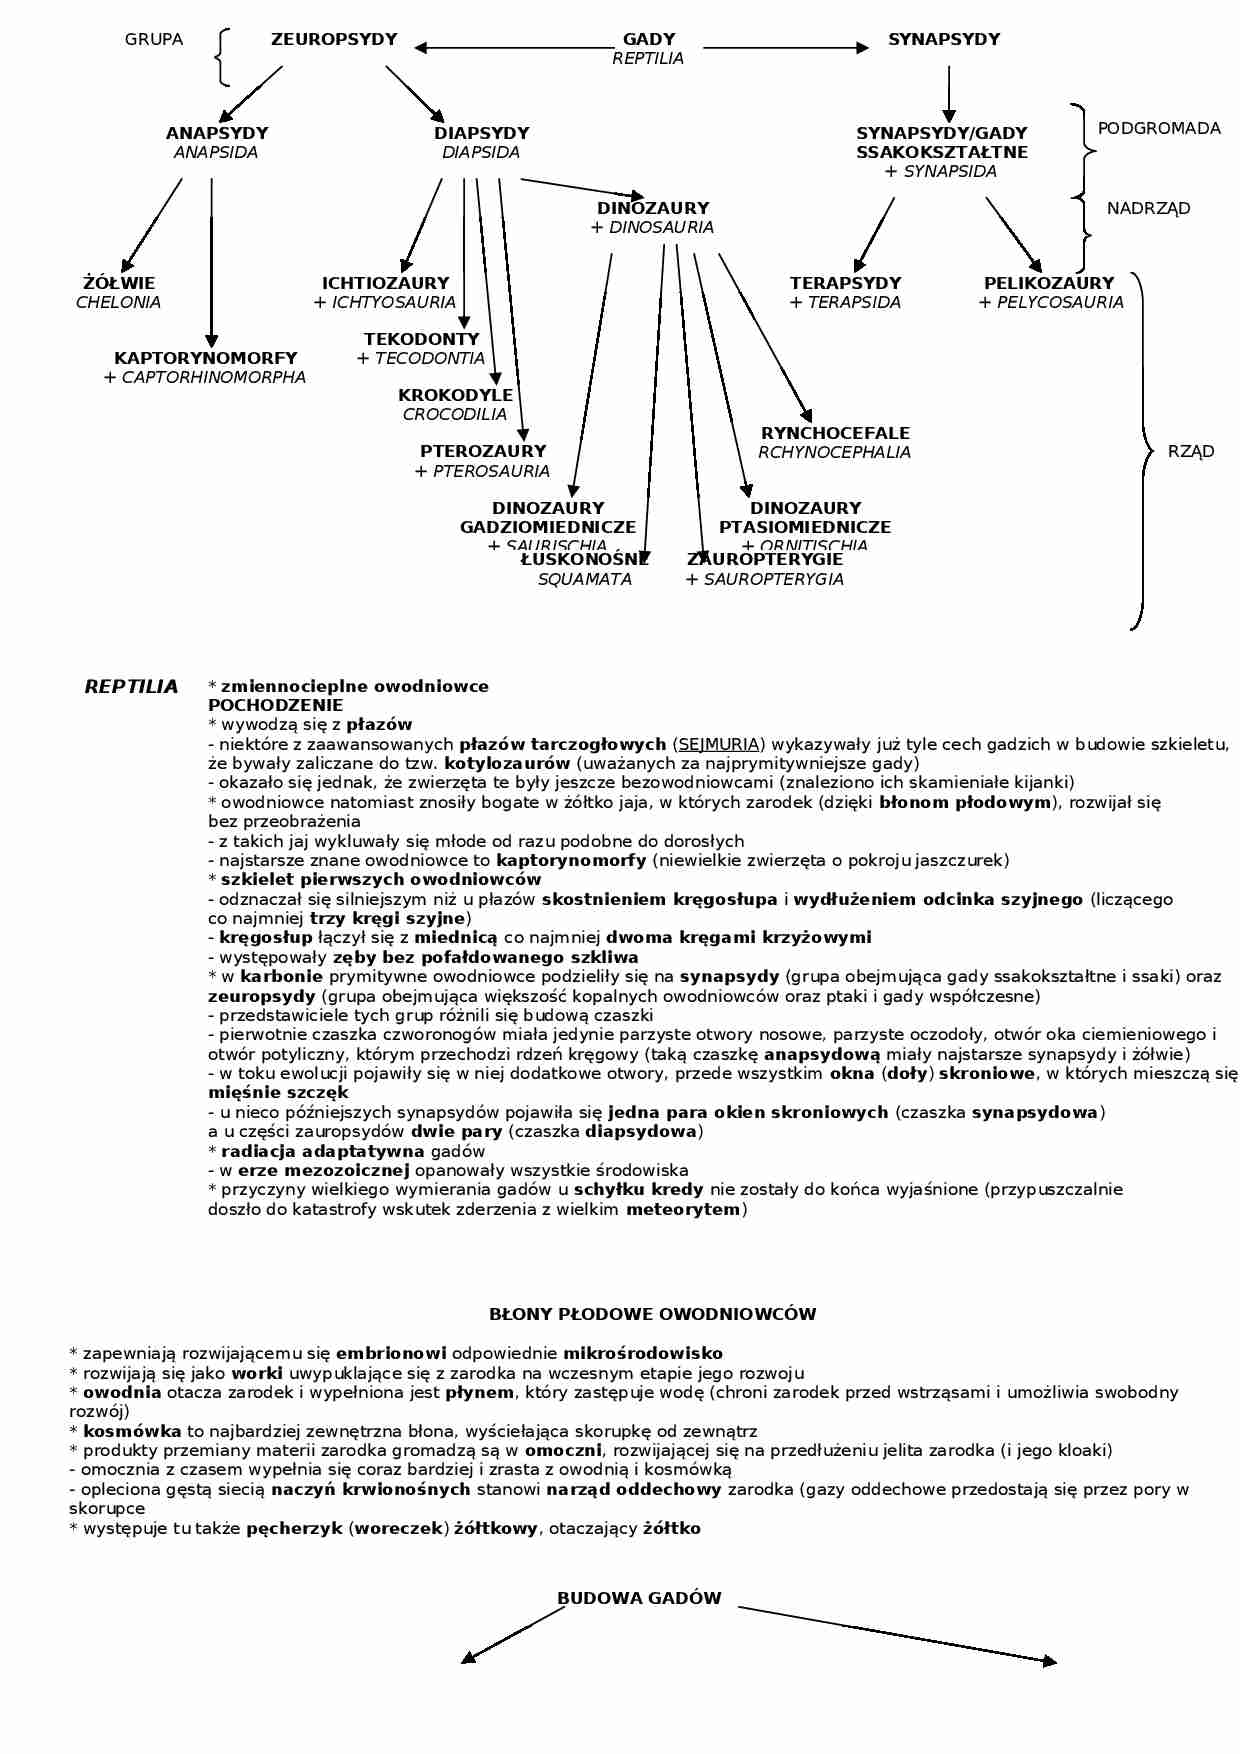 Podział systematów gadów - schemat - strona 1